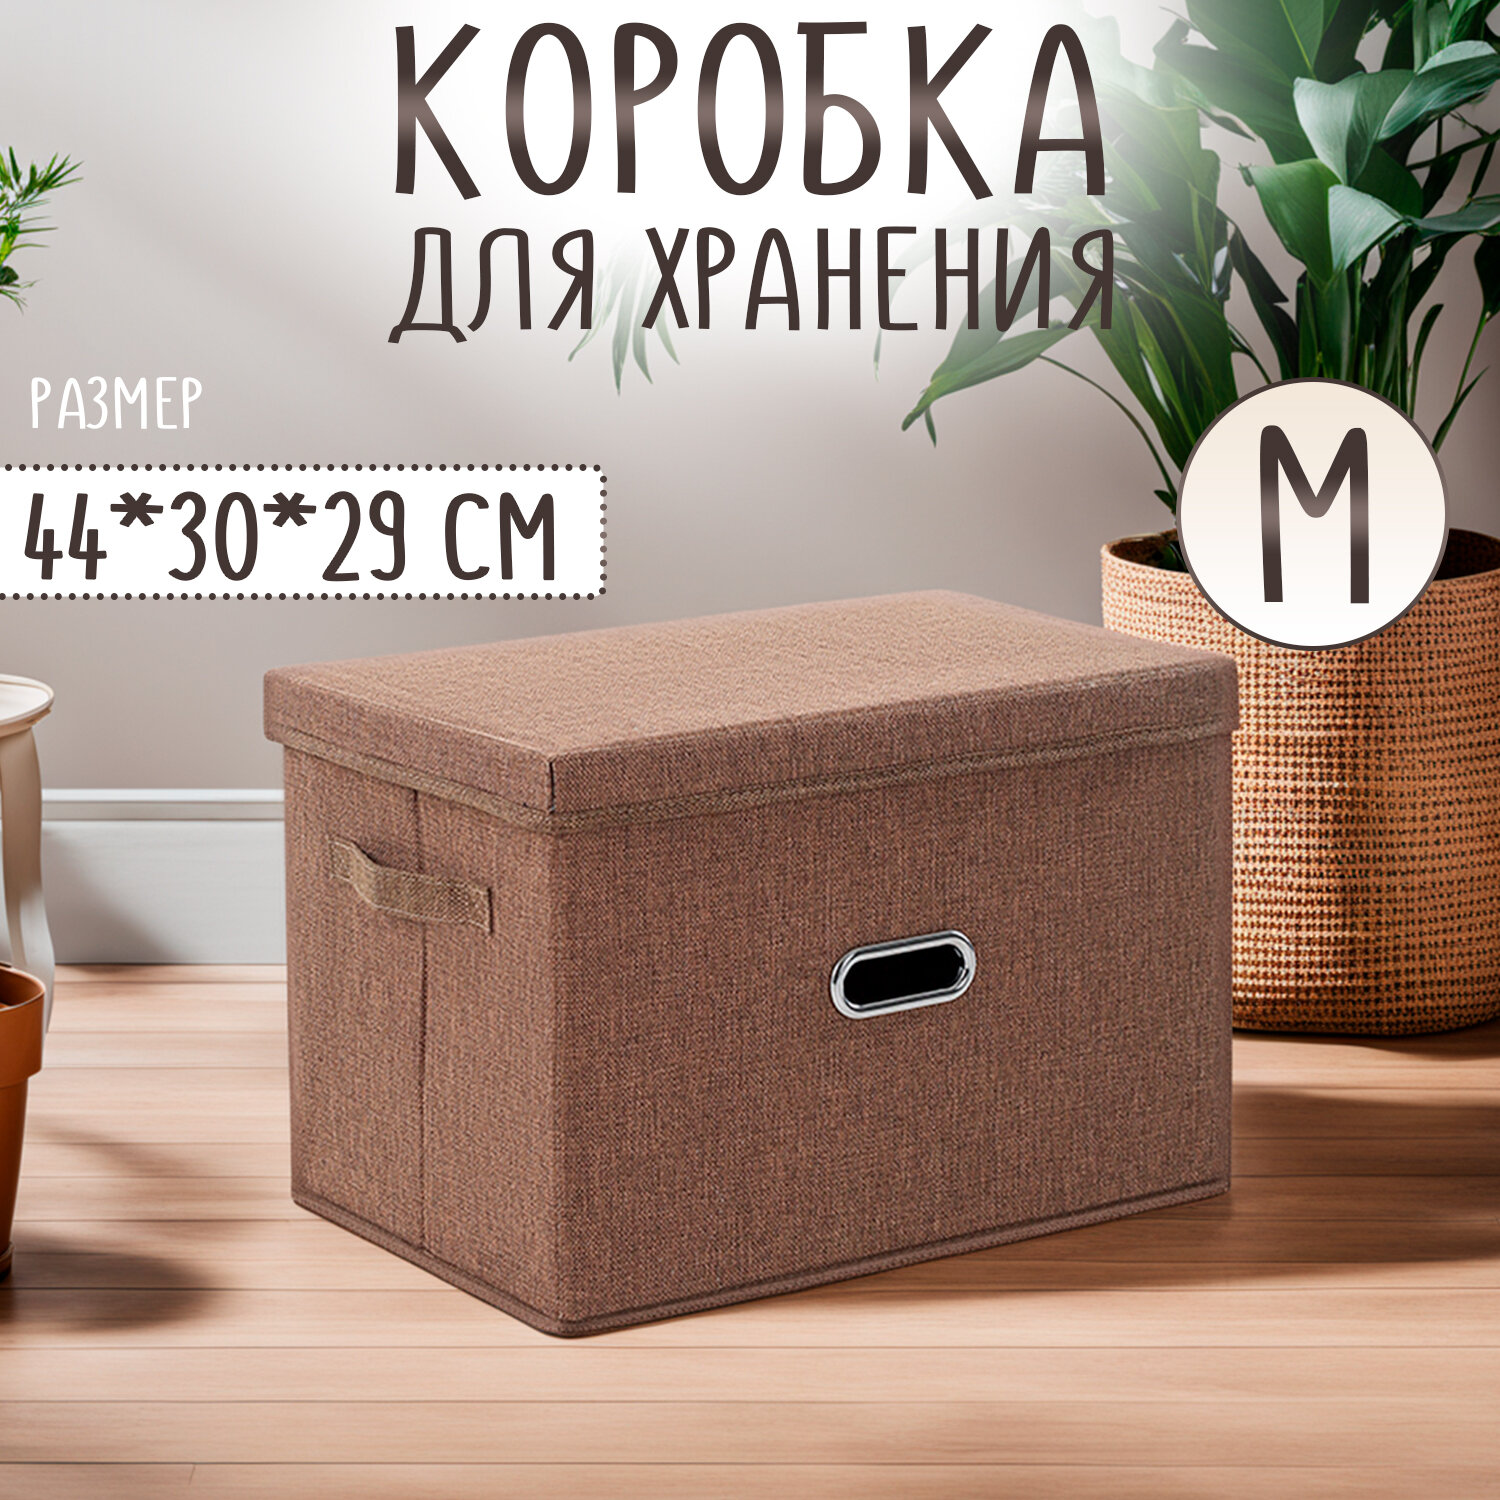 Кофр для хранения, органайзер, коробка ящик с крышкой, контейнер для вещей коричневый 44*30*29 см